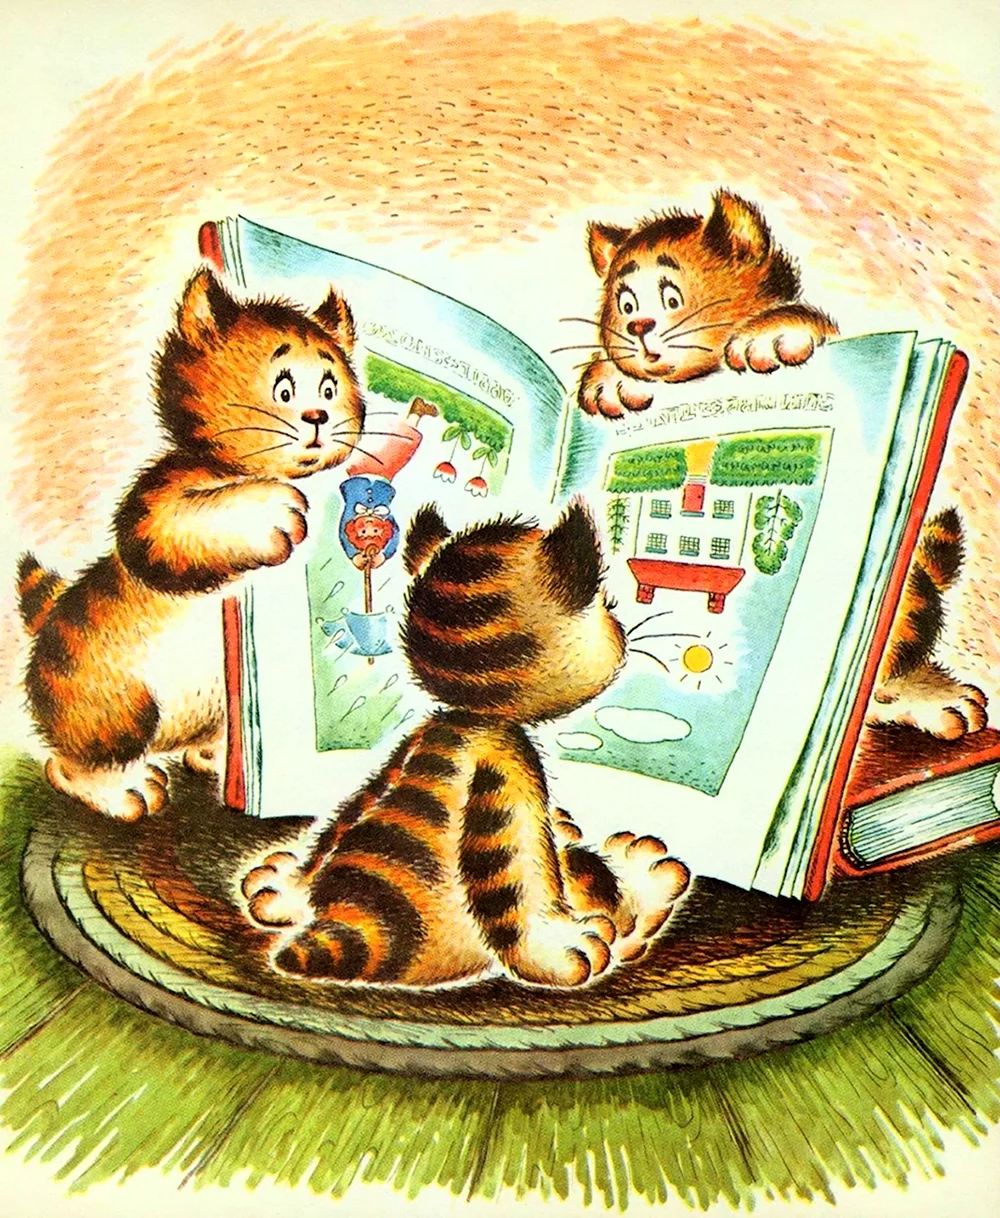 Про чтение детям сказка. Кошка с книжкой. Детские книжки иллюстрации. Котёнок с книжкой. Иллюстрации из детских книжек.